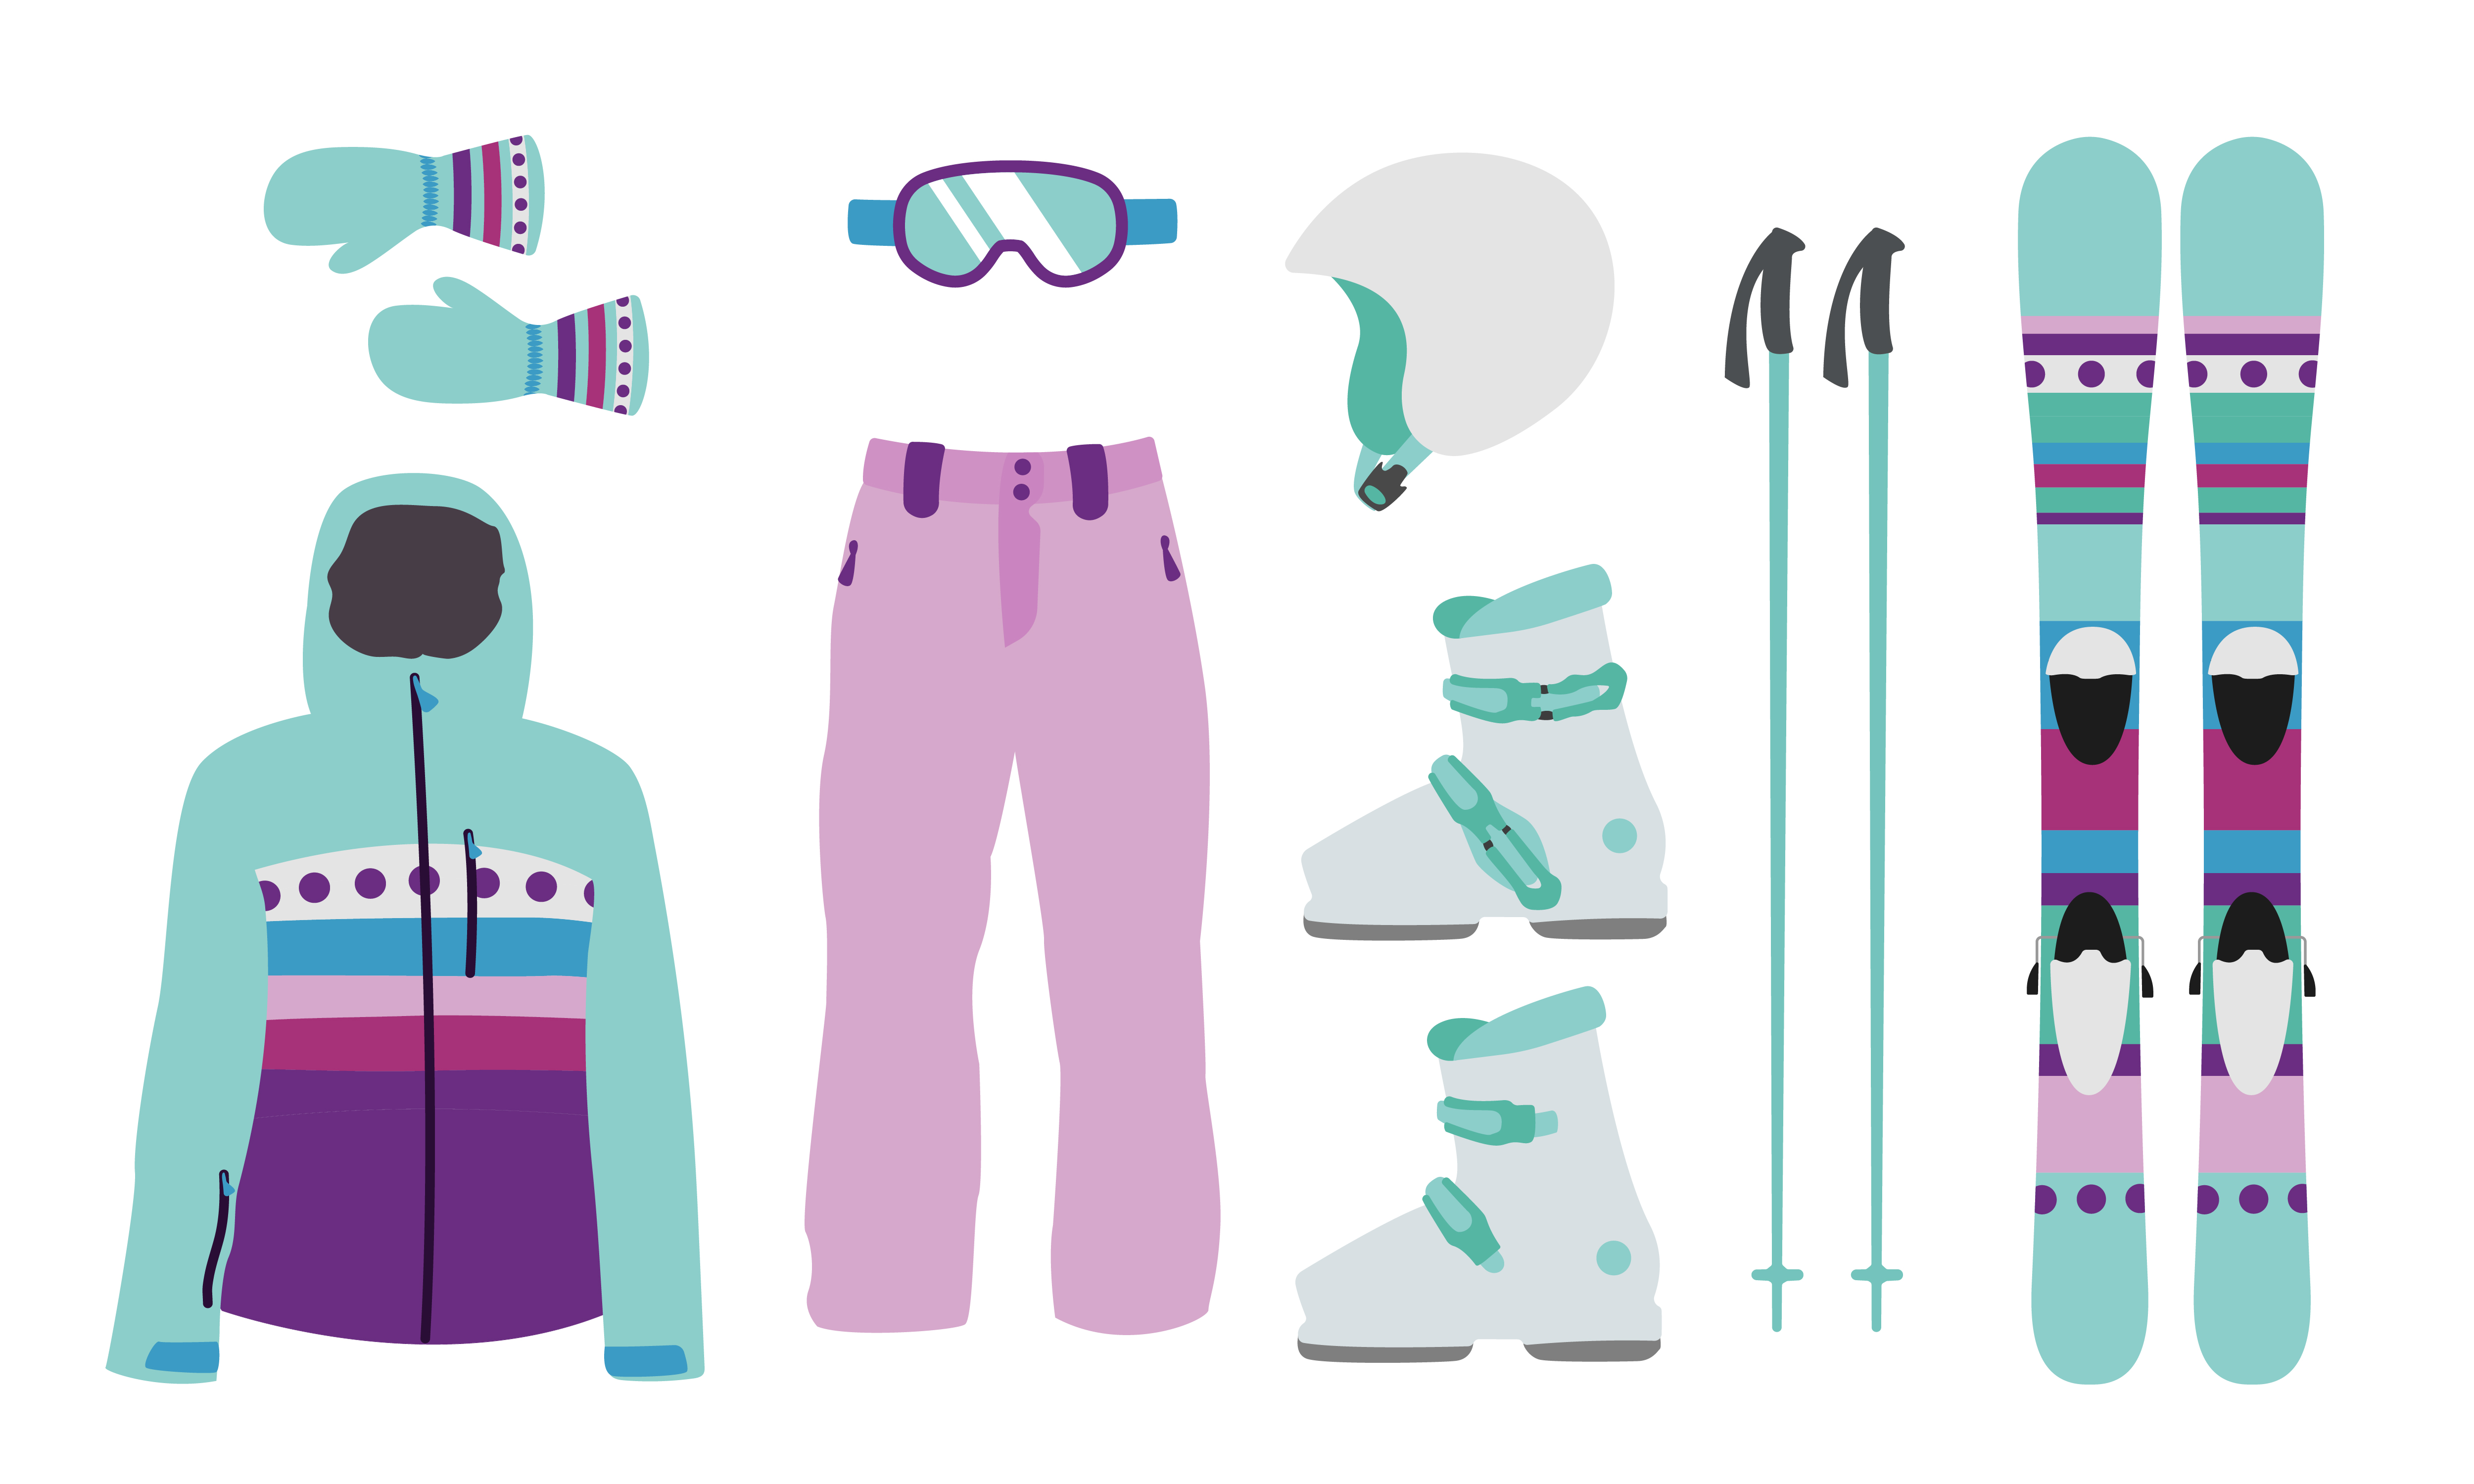 Beneden afronden Teleurgesteld Tom Audreath meisje ski-uitrusting kit kleding vectorillustratie. extreme wintersport.  ski's instellen. vakantie, activiteit of reizen sport berg koude recreatie.  3805143 Vectorkunst bij Vecteezy